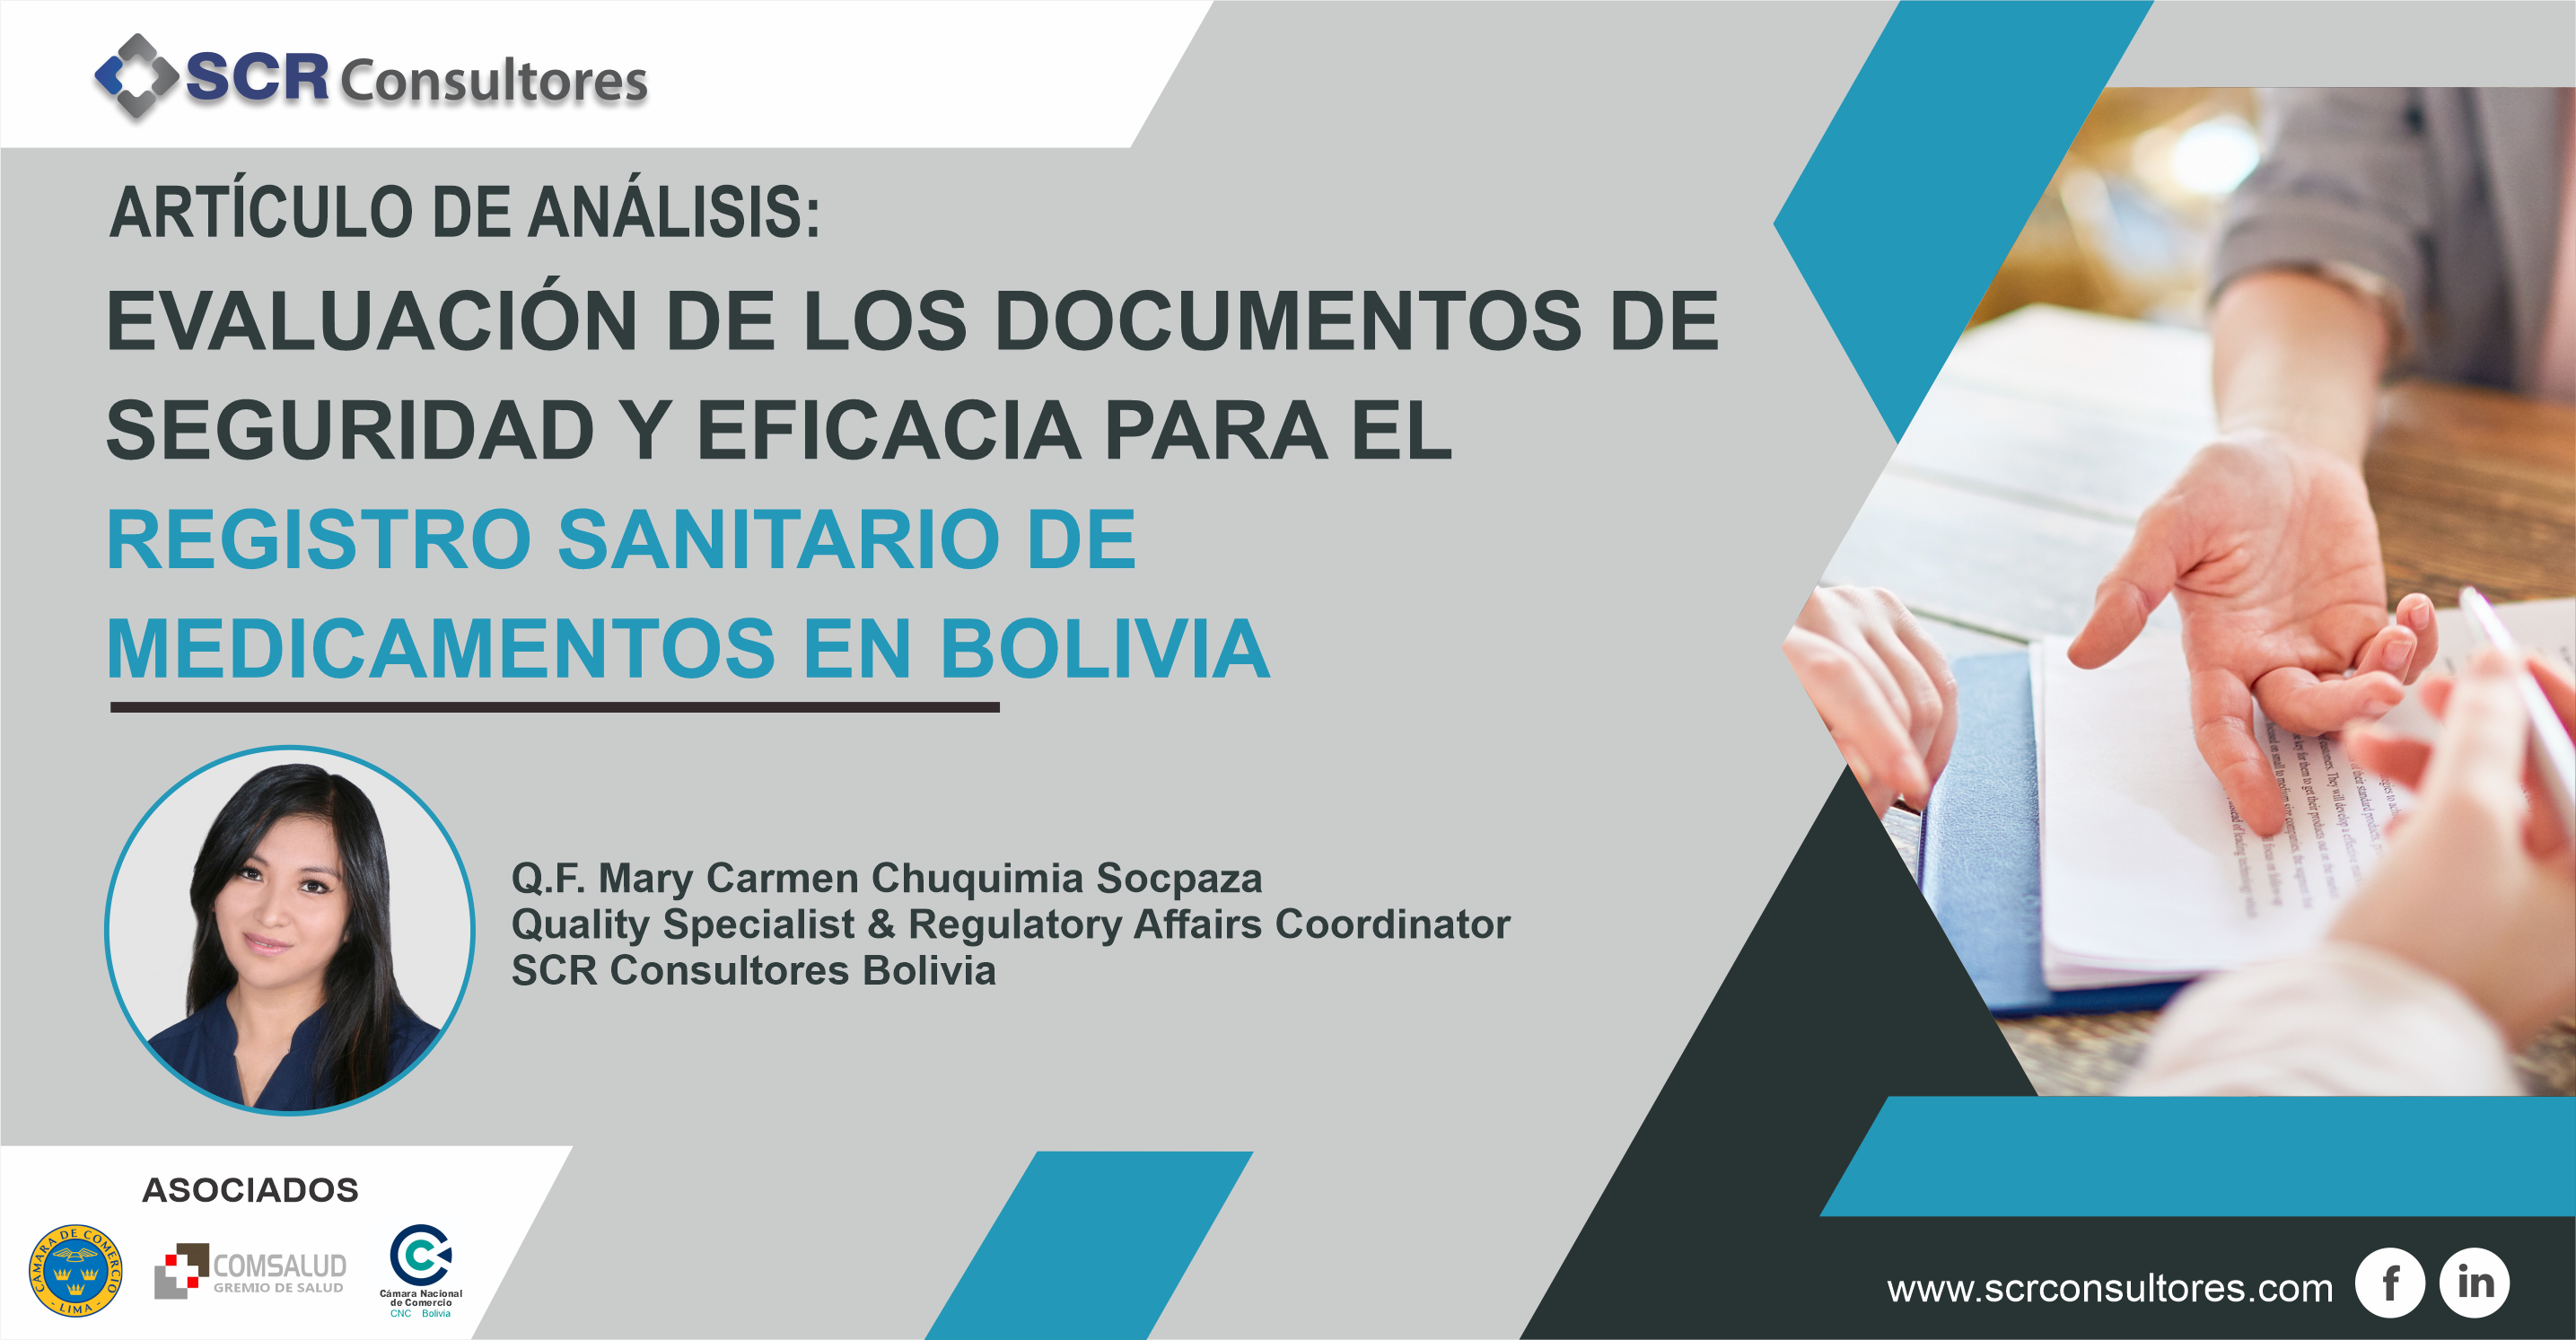 El proceso de evaluación y emisión del Registro Sanitario de Medicamentos en Bolivia, es responsabilidad de la Agencia Estatal de Medicamentos y Tecnología en Salud del Ministerio de Salud y Deportes, a través del Departamento de Autorización de Comercialización específicamente por el Área de evaluación de Medicamentos y la Comisión Farmacológica Nacional, como órgano técnico asesor en evaluación de Eficacia y Seguridad, misma que tiene como finalidad principal la de seleccionar farmacológicamente los medicamentos que podrán ser comercializados en el país, evaluar sus indicaciones y contraindicaciones bajo criterios técnicos y científicos, con el objeto de garantizar la eficacia de los mismos y su uso racional por la población, dicho proceso se fundamenta inevitablemente y de forma obligatoria en las Normas internacionales y Nacional establecidas para Ensayos clínicos, en concordancia con el avance continuo de la Medicina Basada en Evidencias.